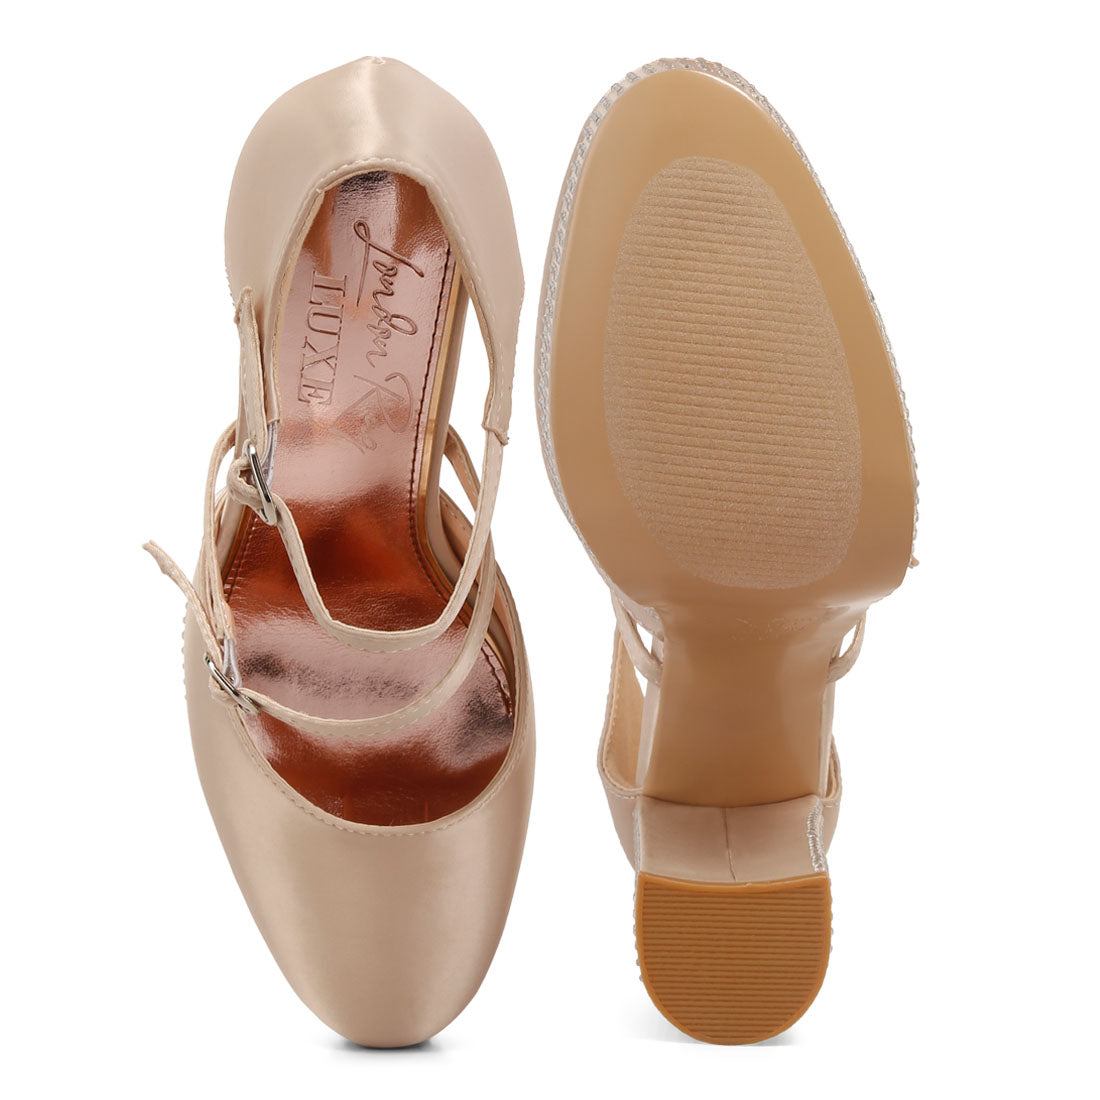 rhinestones embellished platform mary jane sandals#color_beige